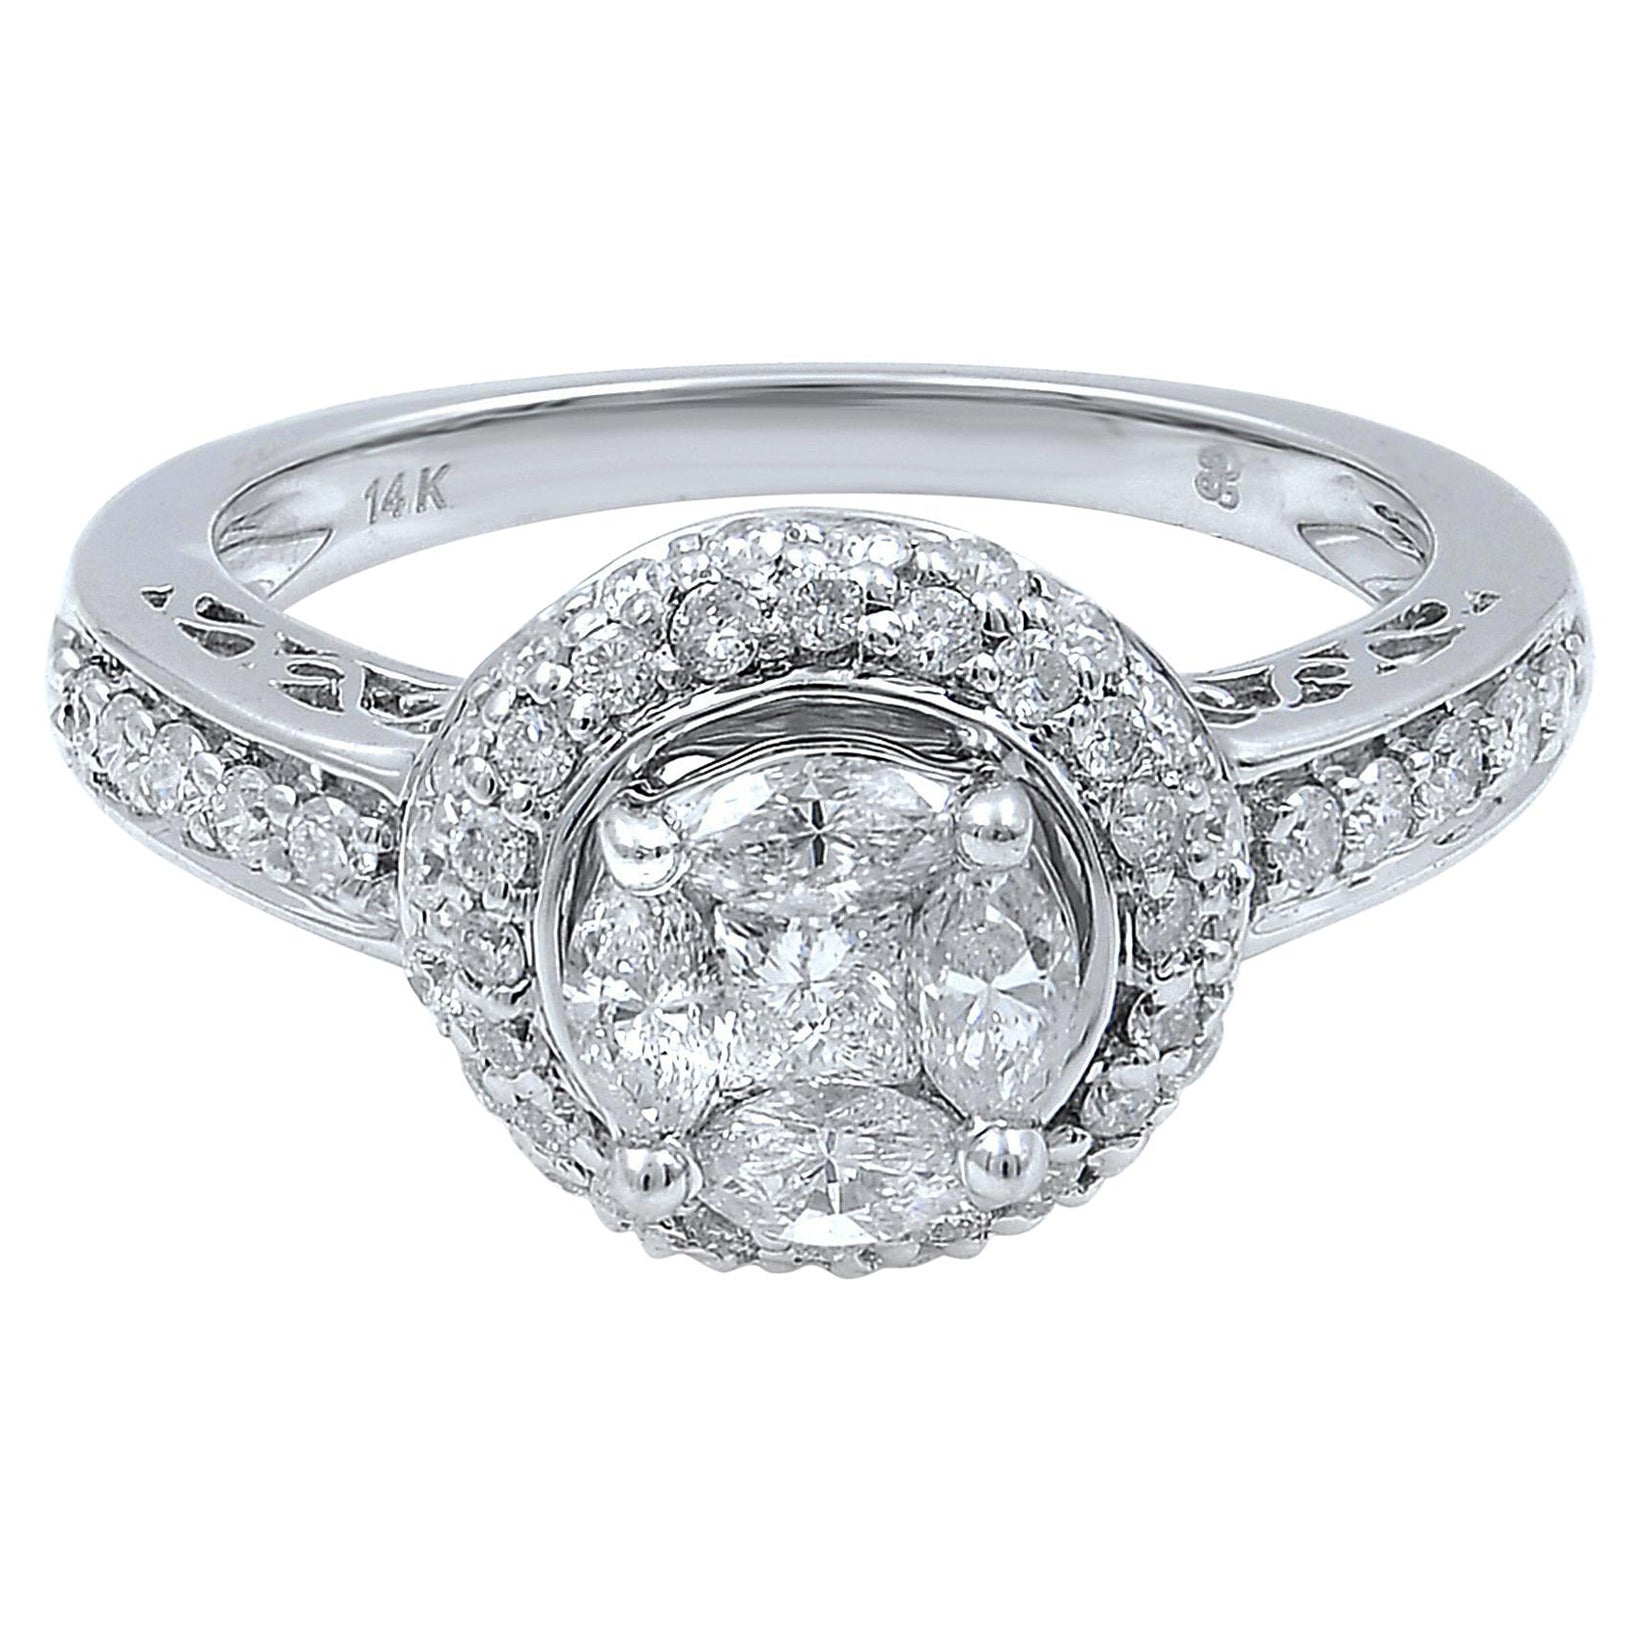 Rachel Koen Diamond Halo Engagement Ring 14K White Gold 1.13cttw For Sale